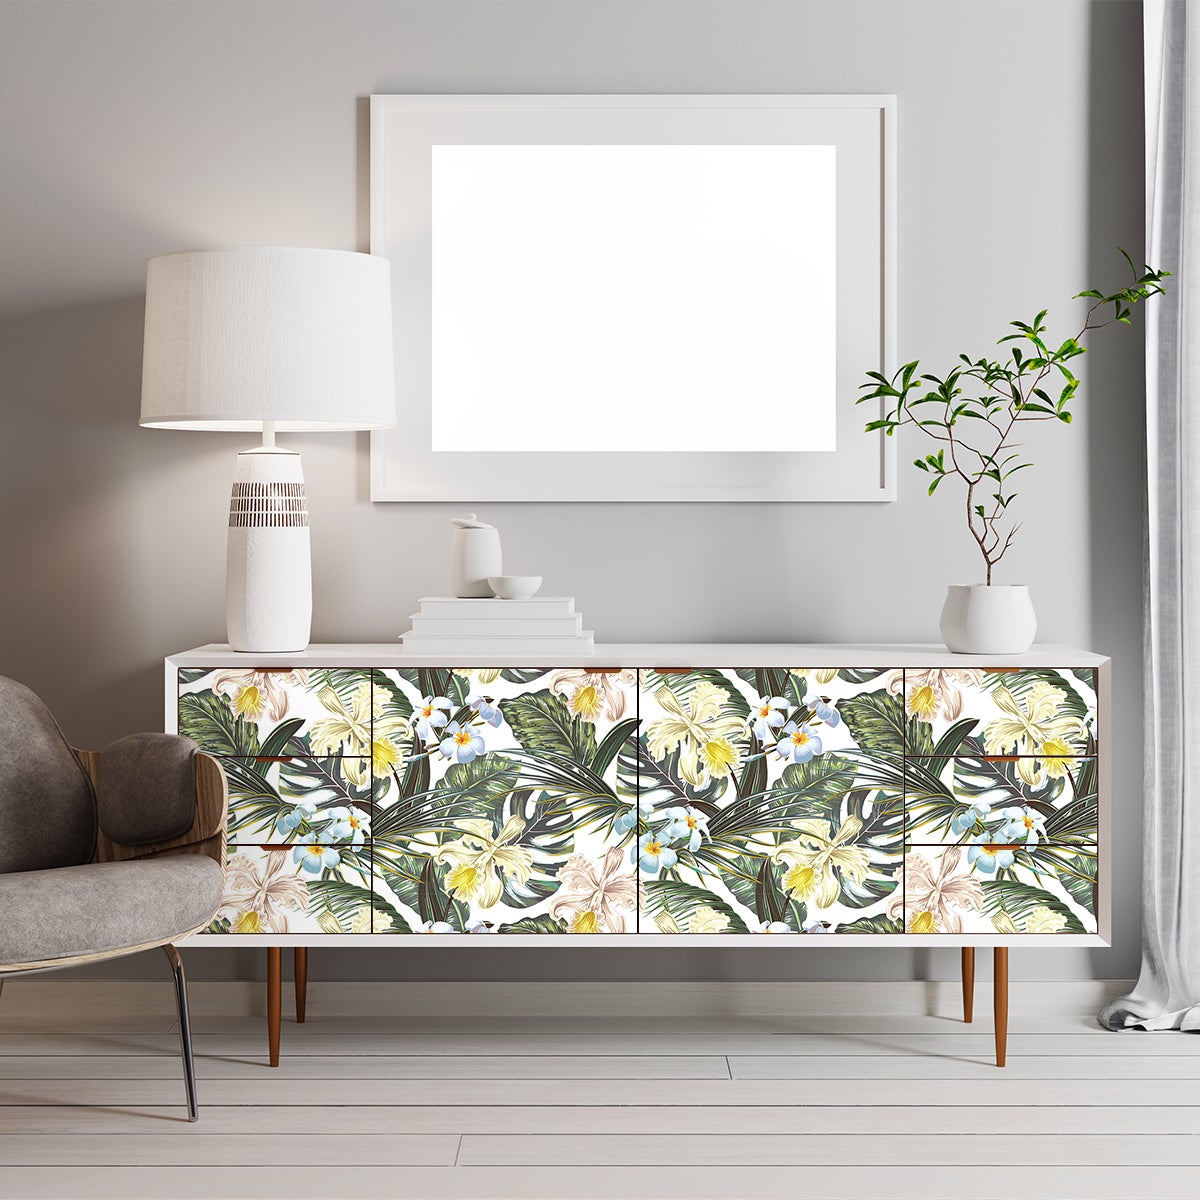 Vinilo Adhesivo para Muebles y Pared, 45 x 200 cm, Tropical, Color Verde,  Fon…  Papel adhesivo para muebles, Adhesivos decorativos para pared,  Decoraciones de casa